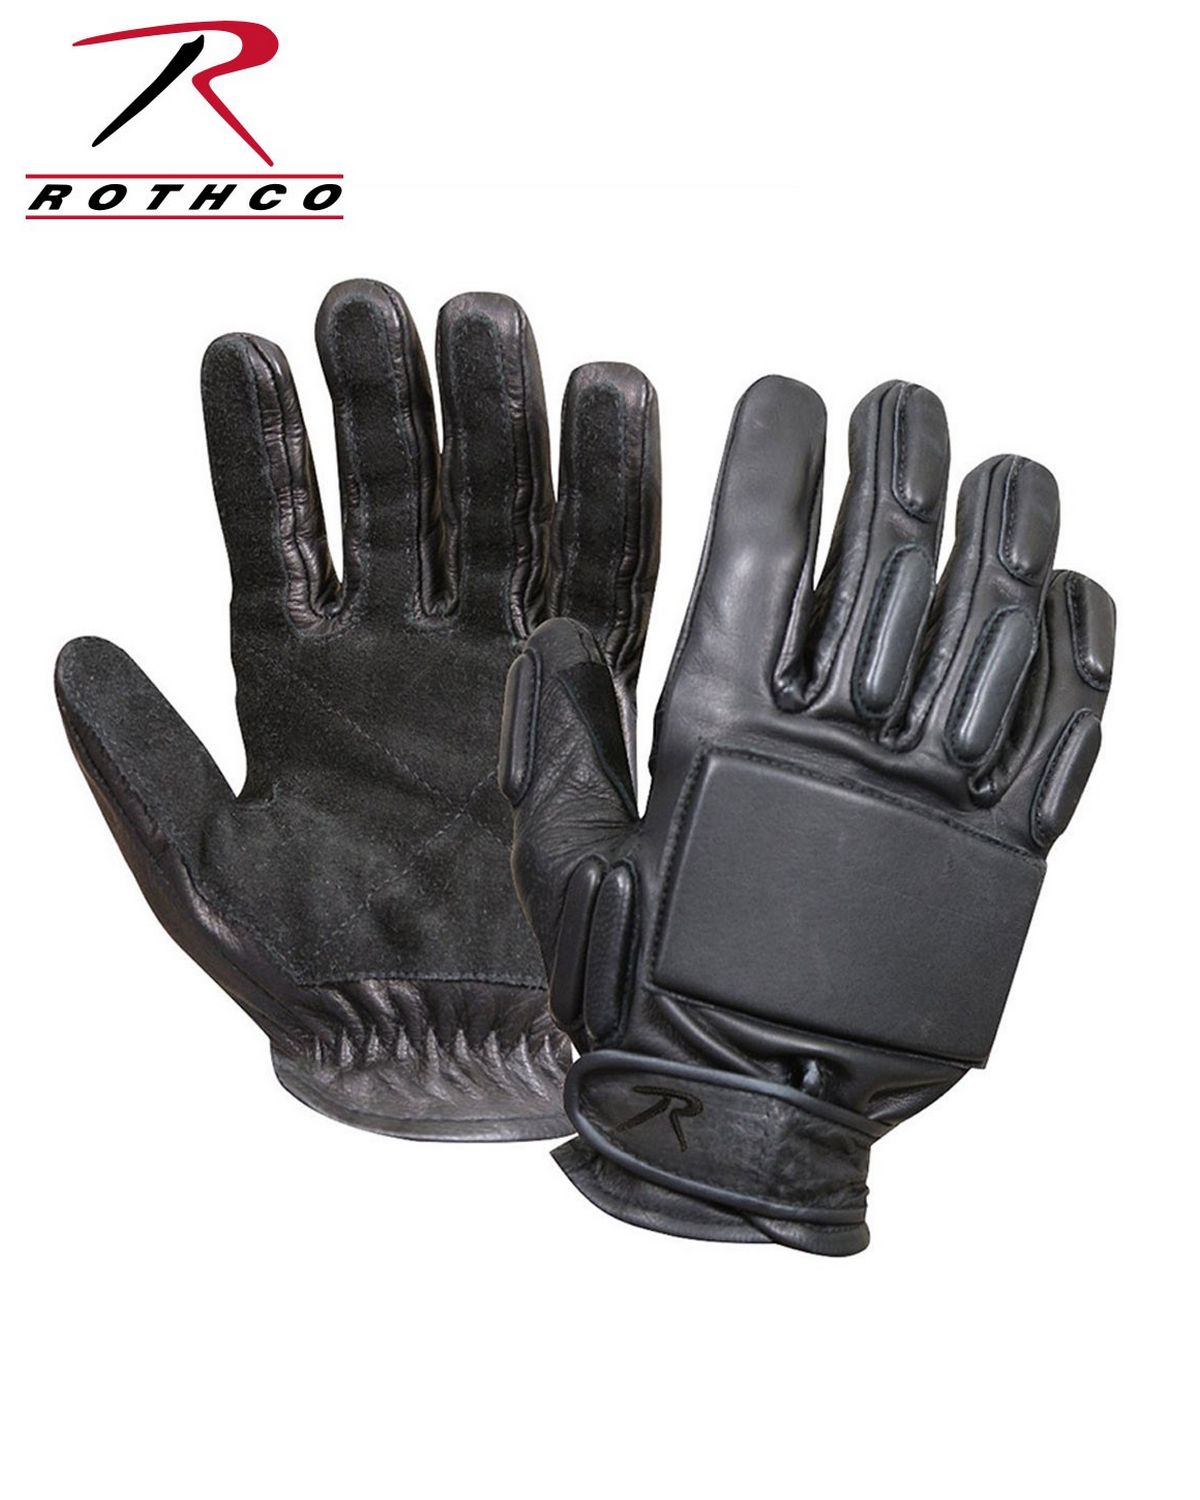 Rothco Full-Finger Rappelling Gloves Pro-Motion Distributing Direct 3451LRG 